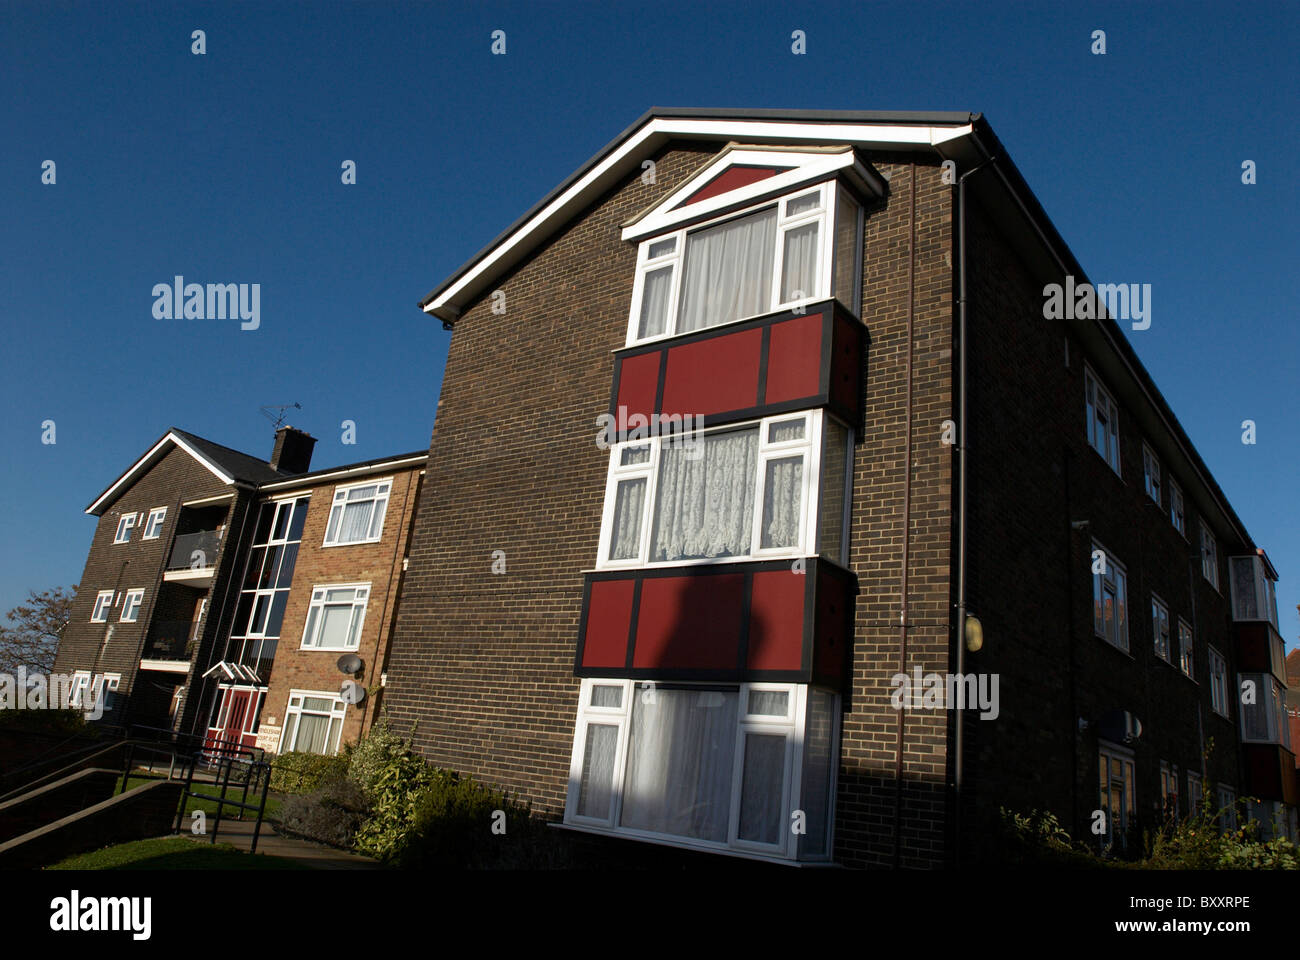 Council flats Ipswich UK Stock Photo